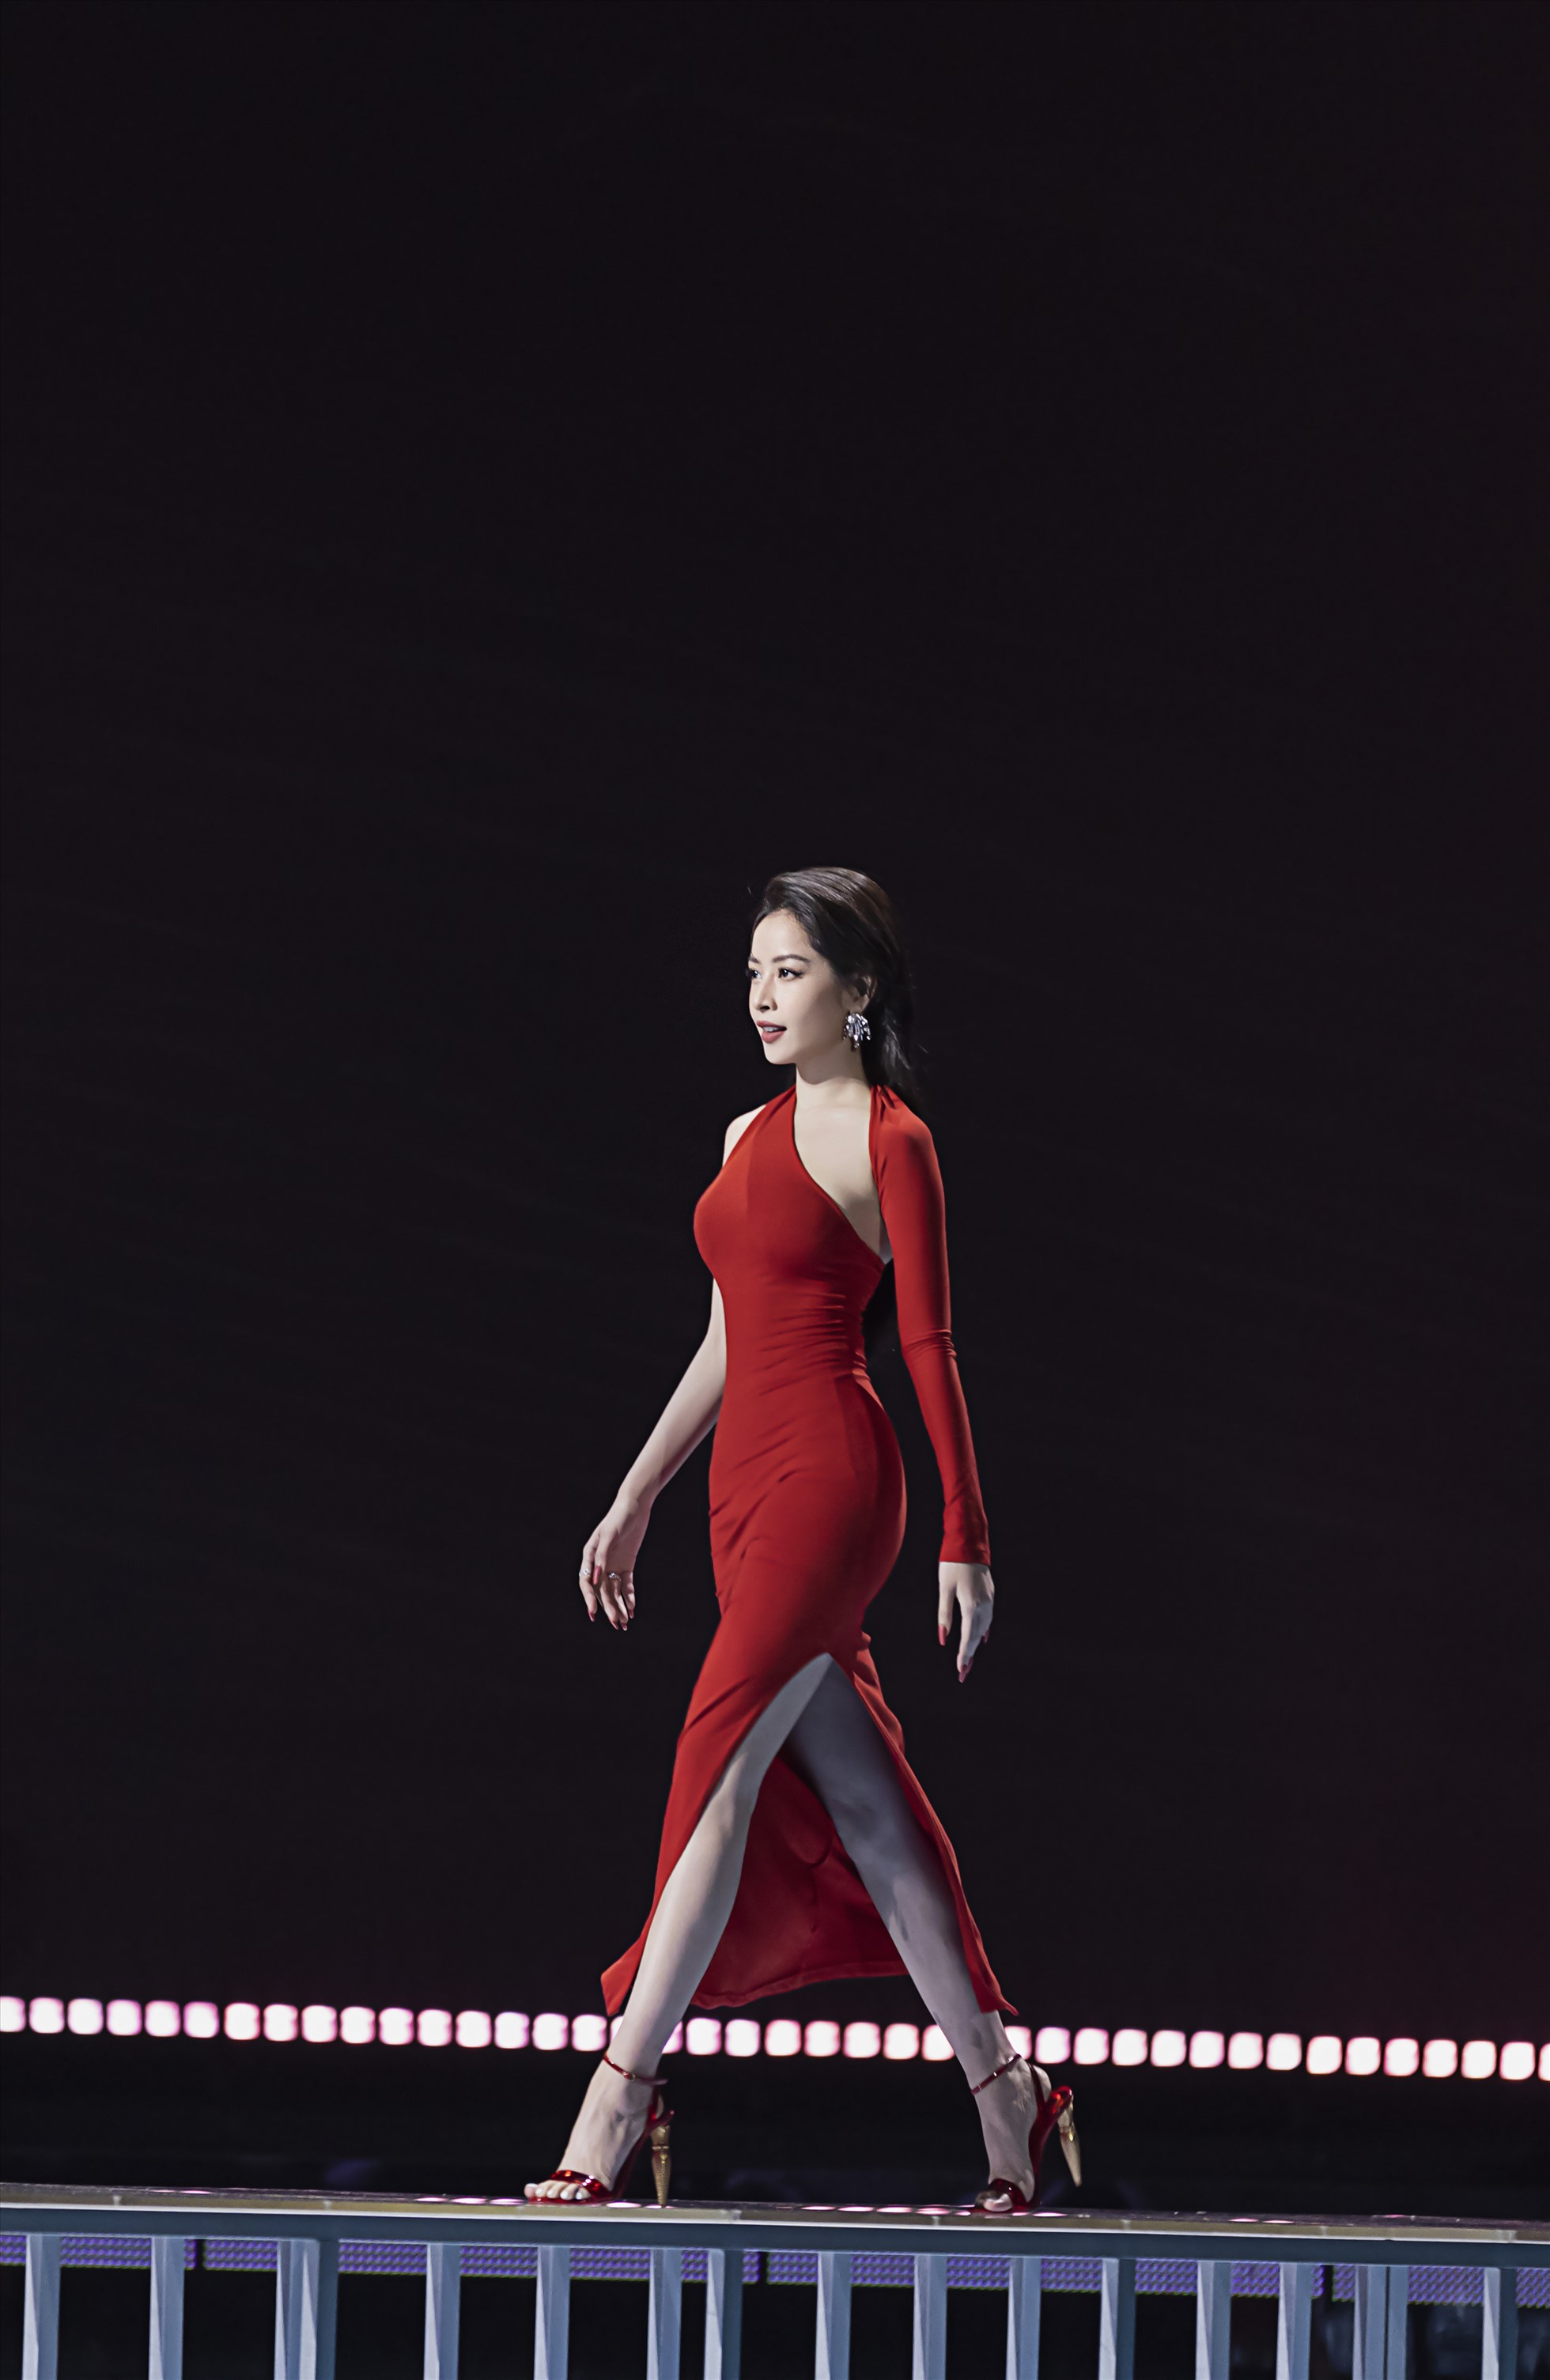 Trong chiếc váy đỏ lệch vai bó sát khoe đường cong cùng những đường cut-out tạo điểm nhấn, Chi Pu xinh đẹp nổi bật.